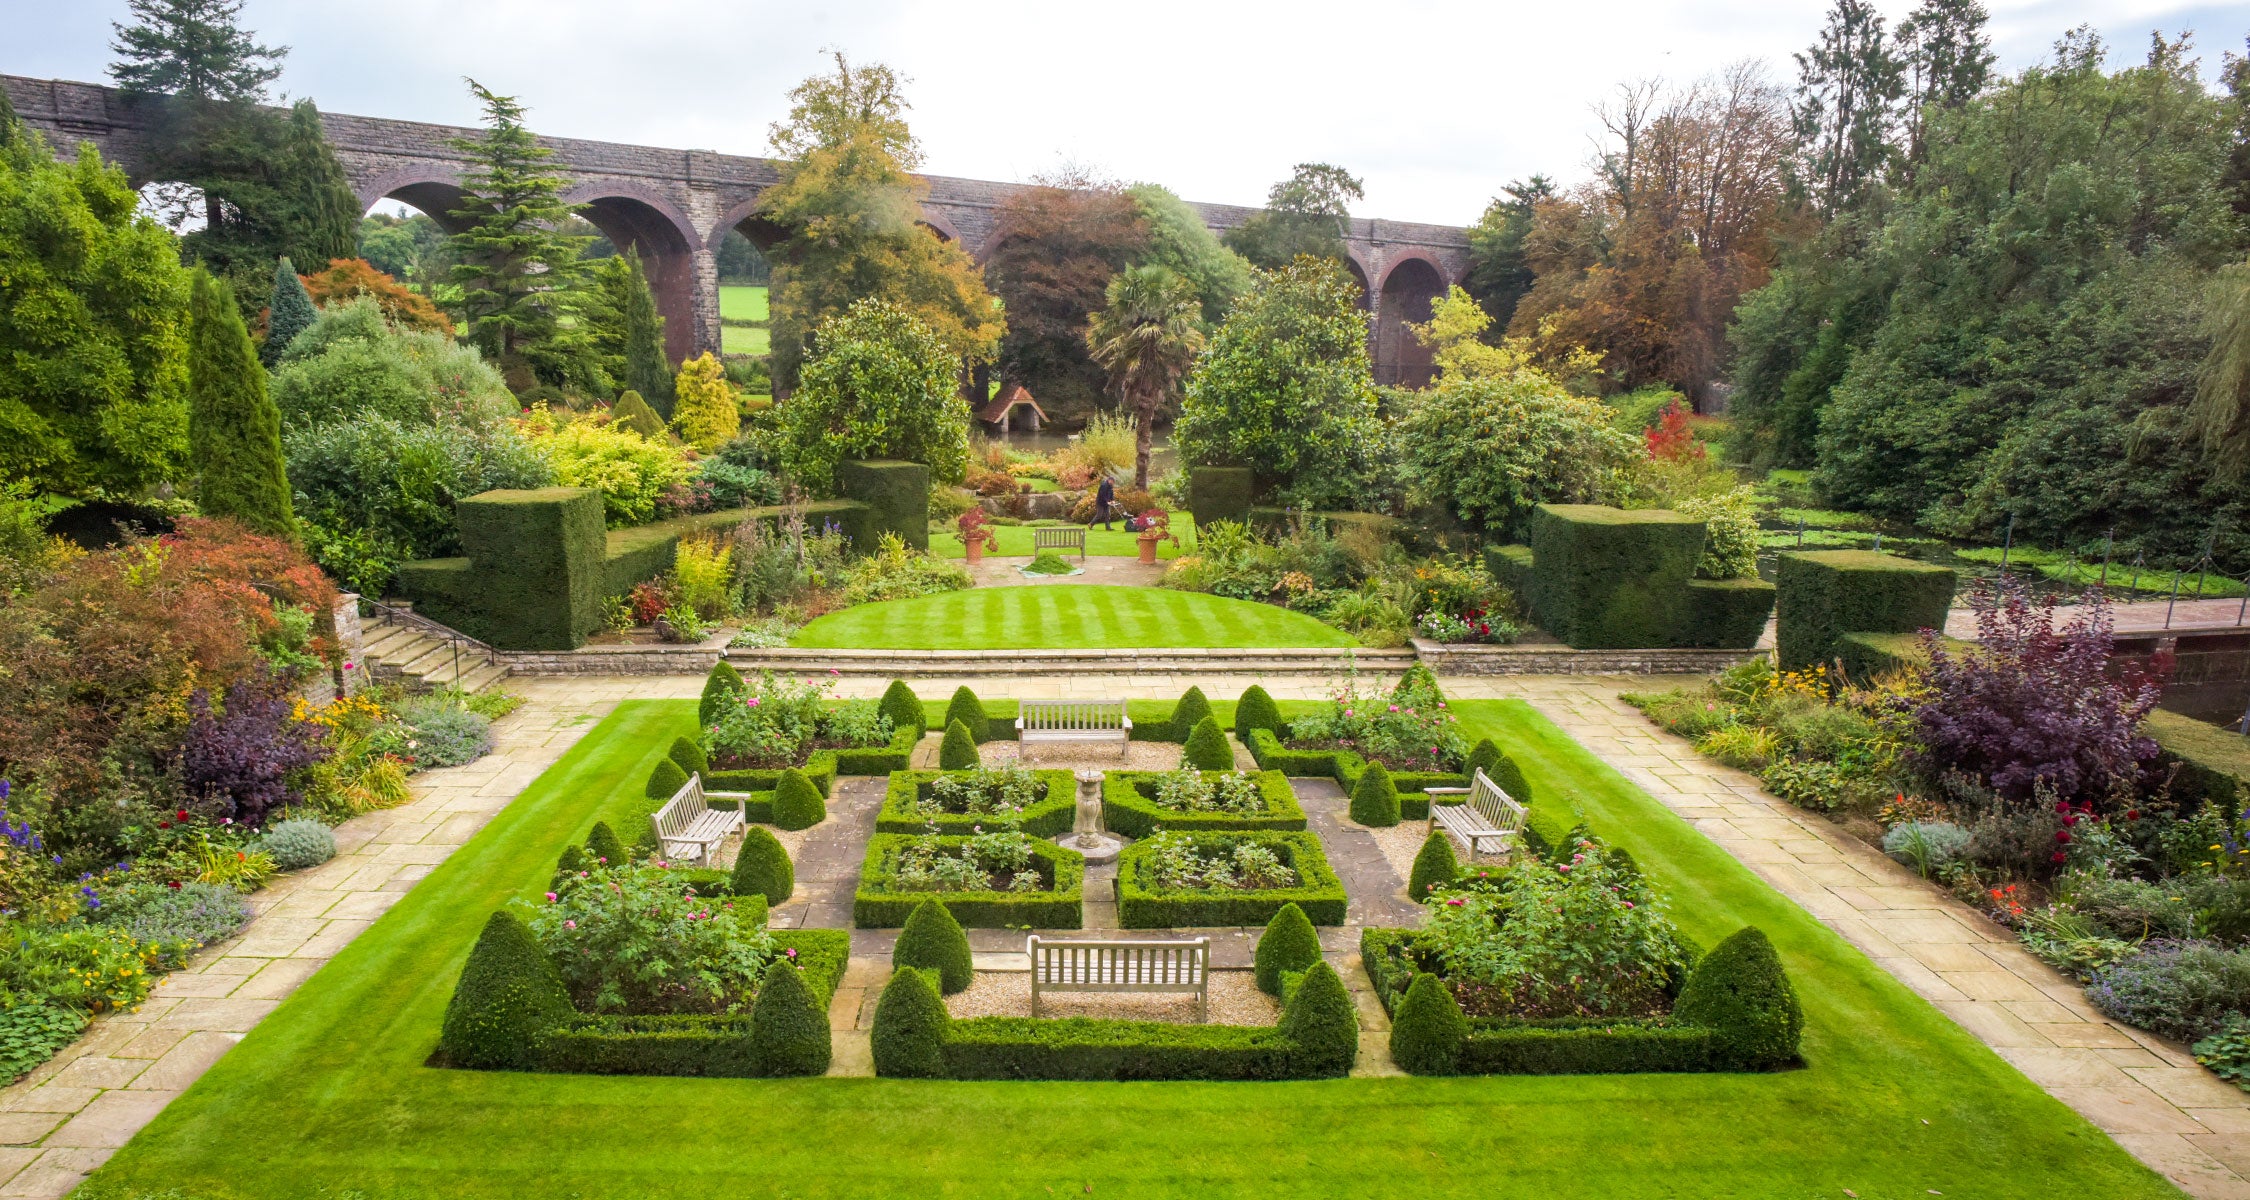 The world famous Kilver Court Gardens - Parterre